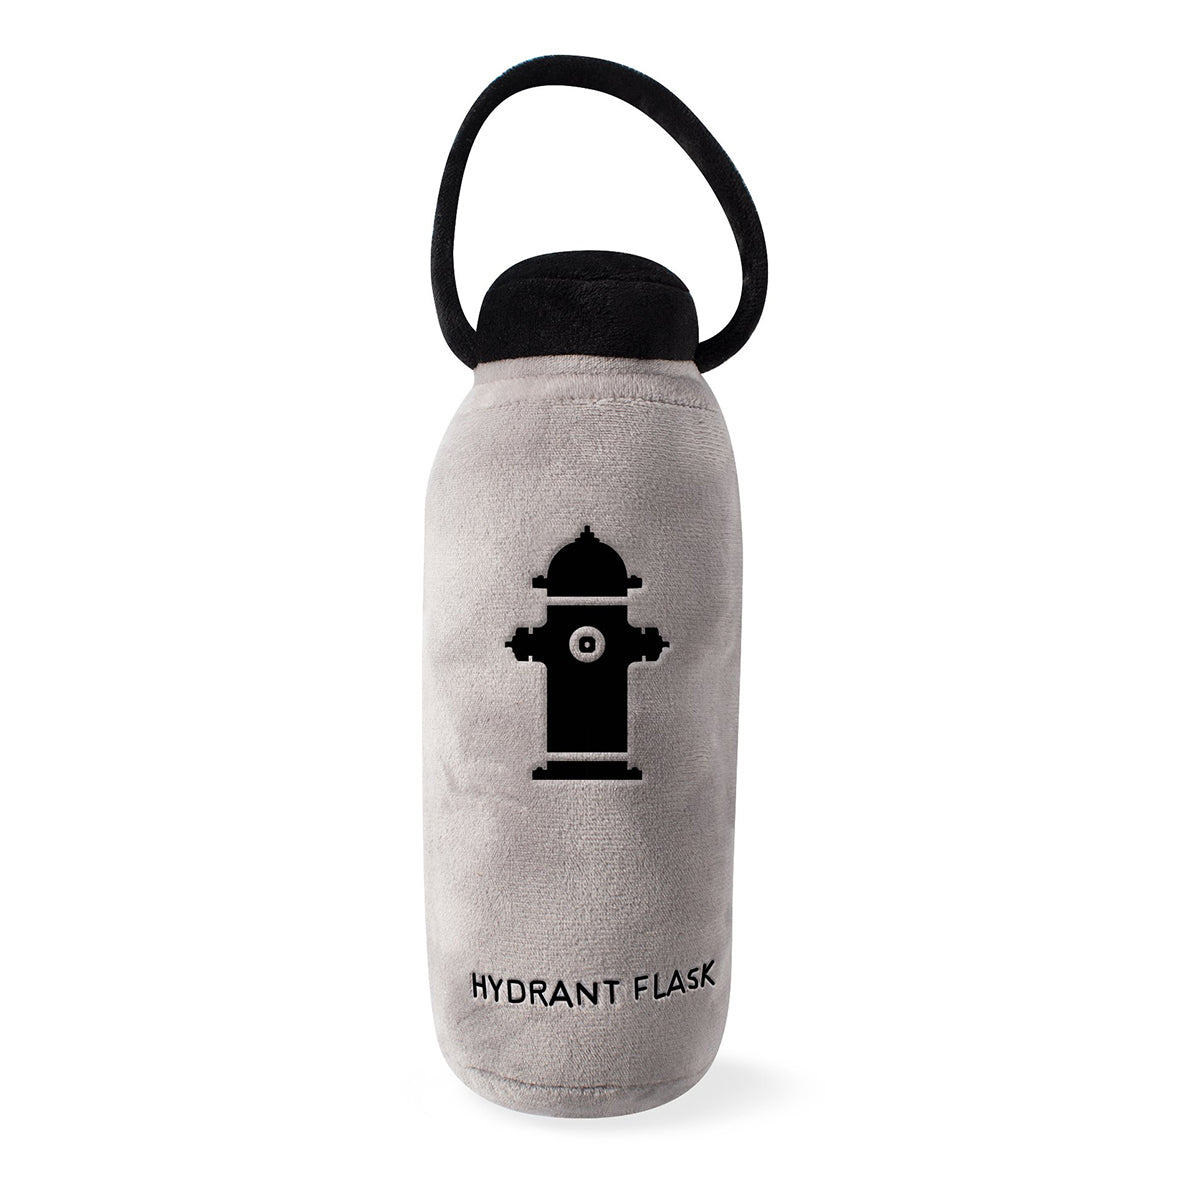 Pet Boutique - Dog Toy - Hydrant Flask Plush Dog Toy by Fringe Studio